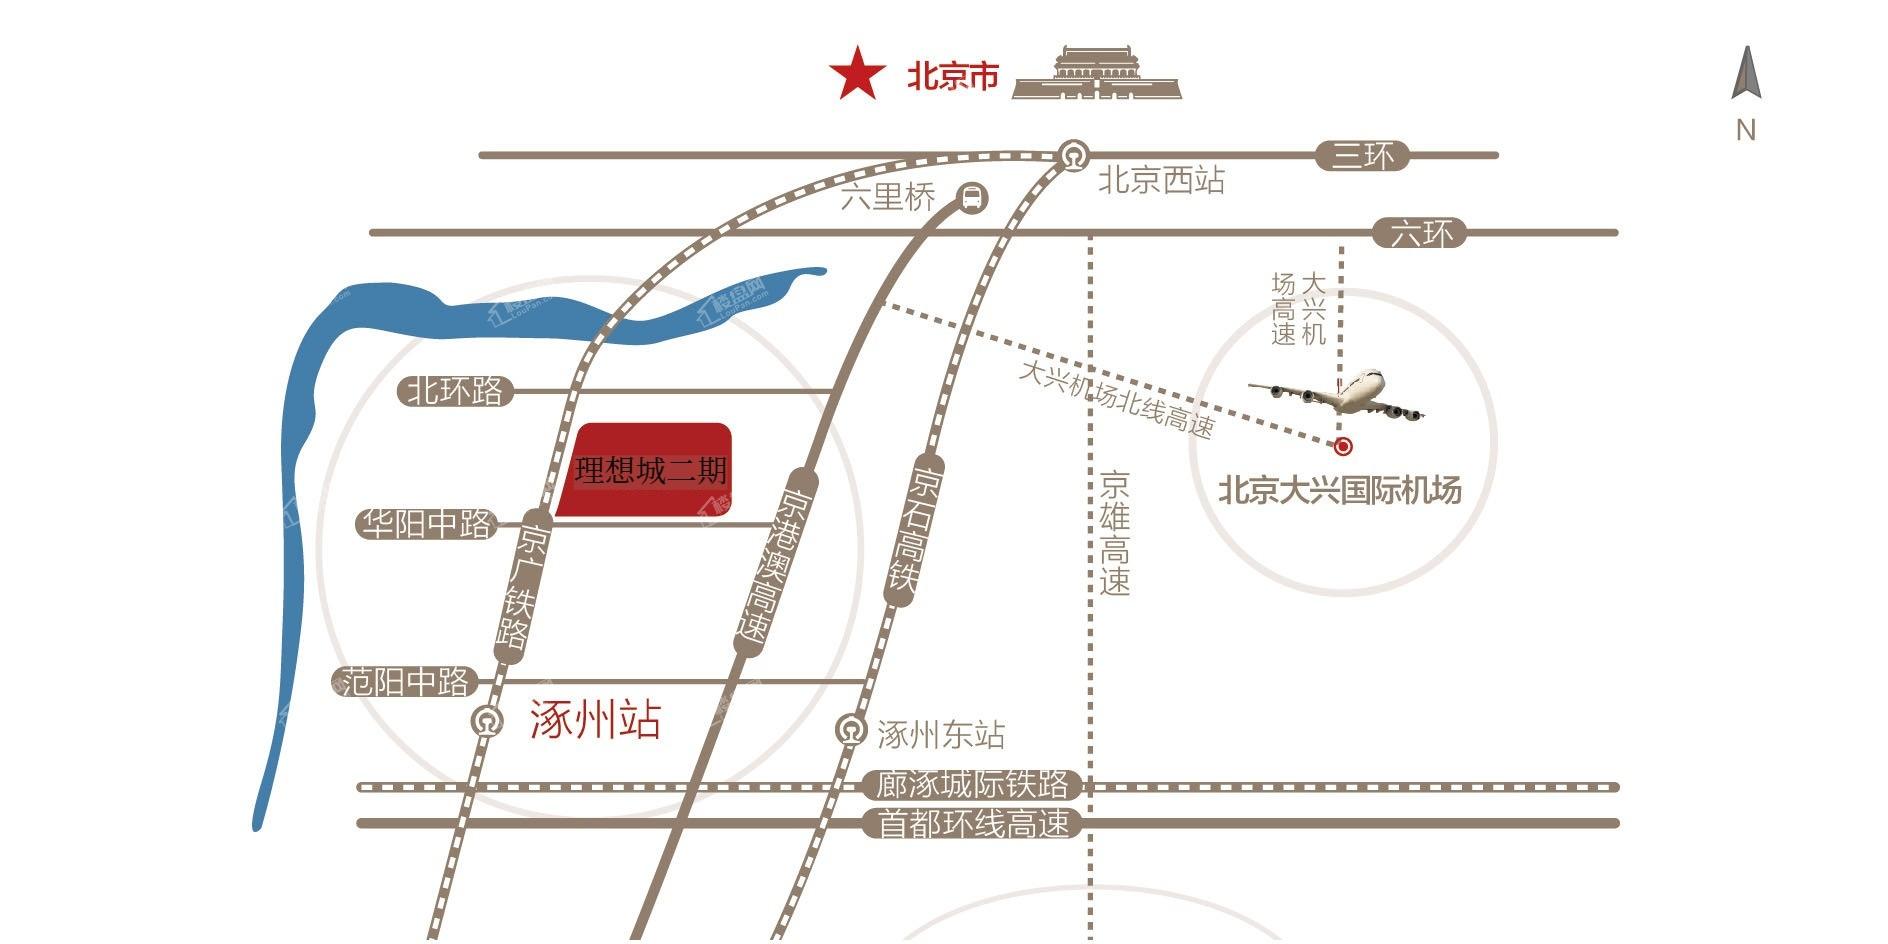 分类 房产楼讯 119次浏览 涿州作为环京第一梯队,是环京区域唯一通